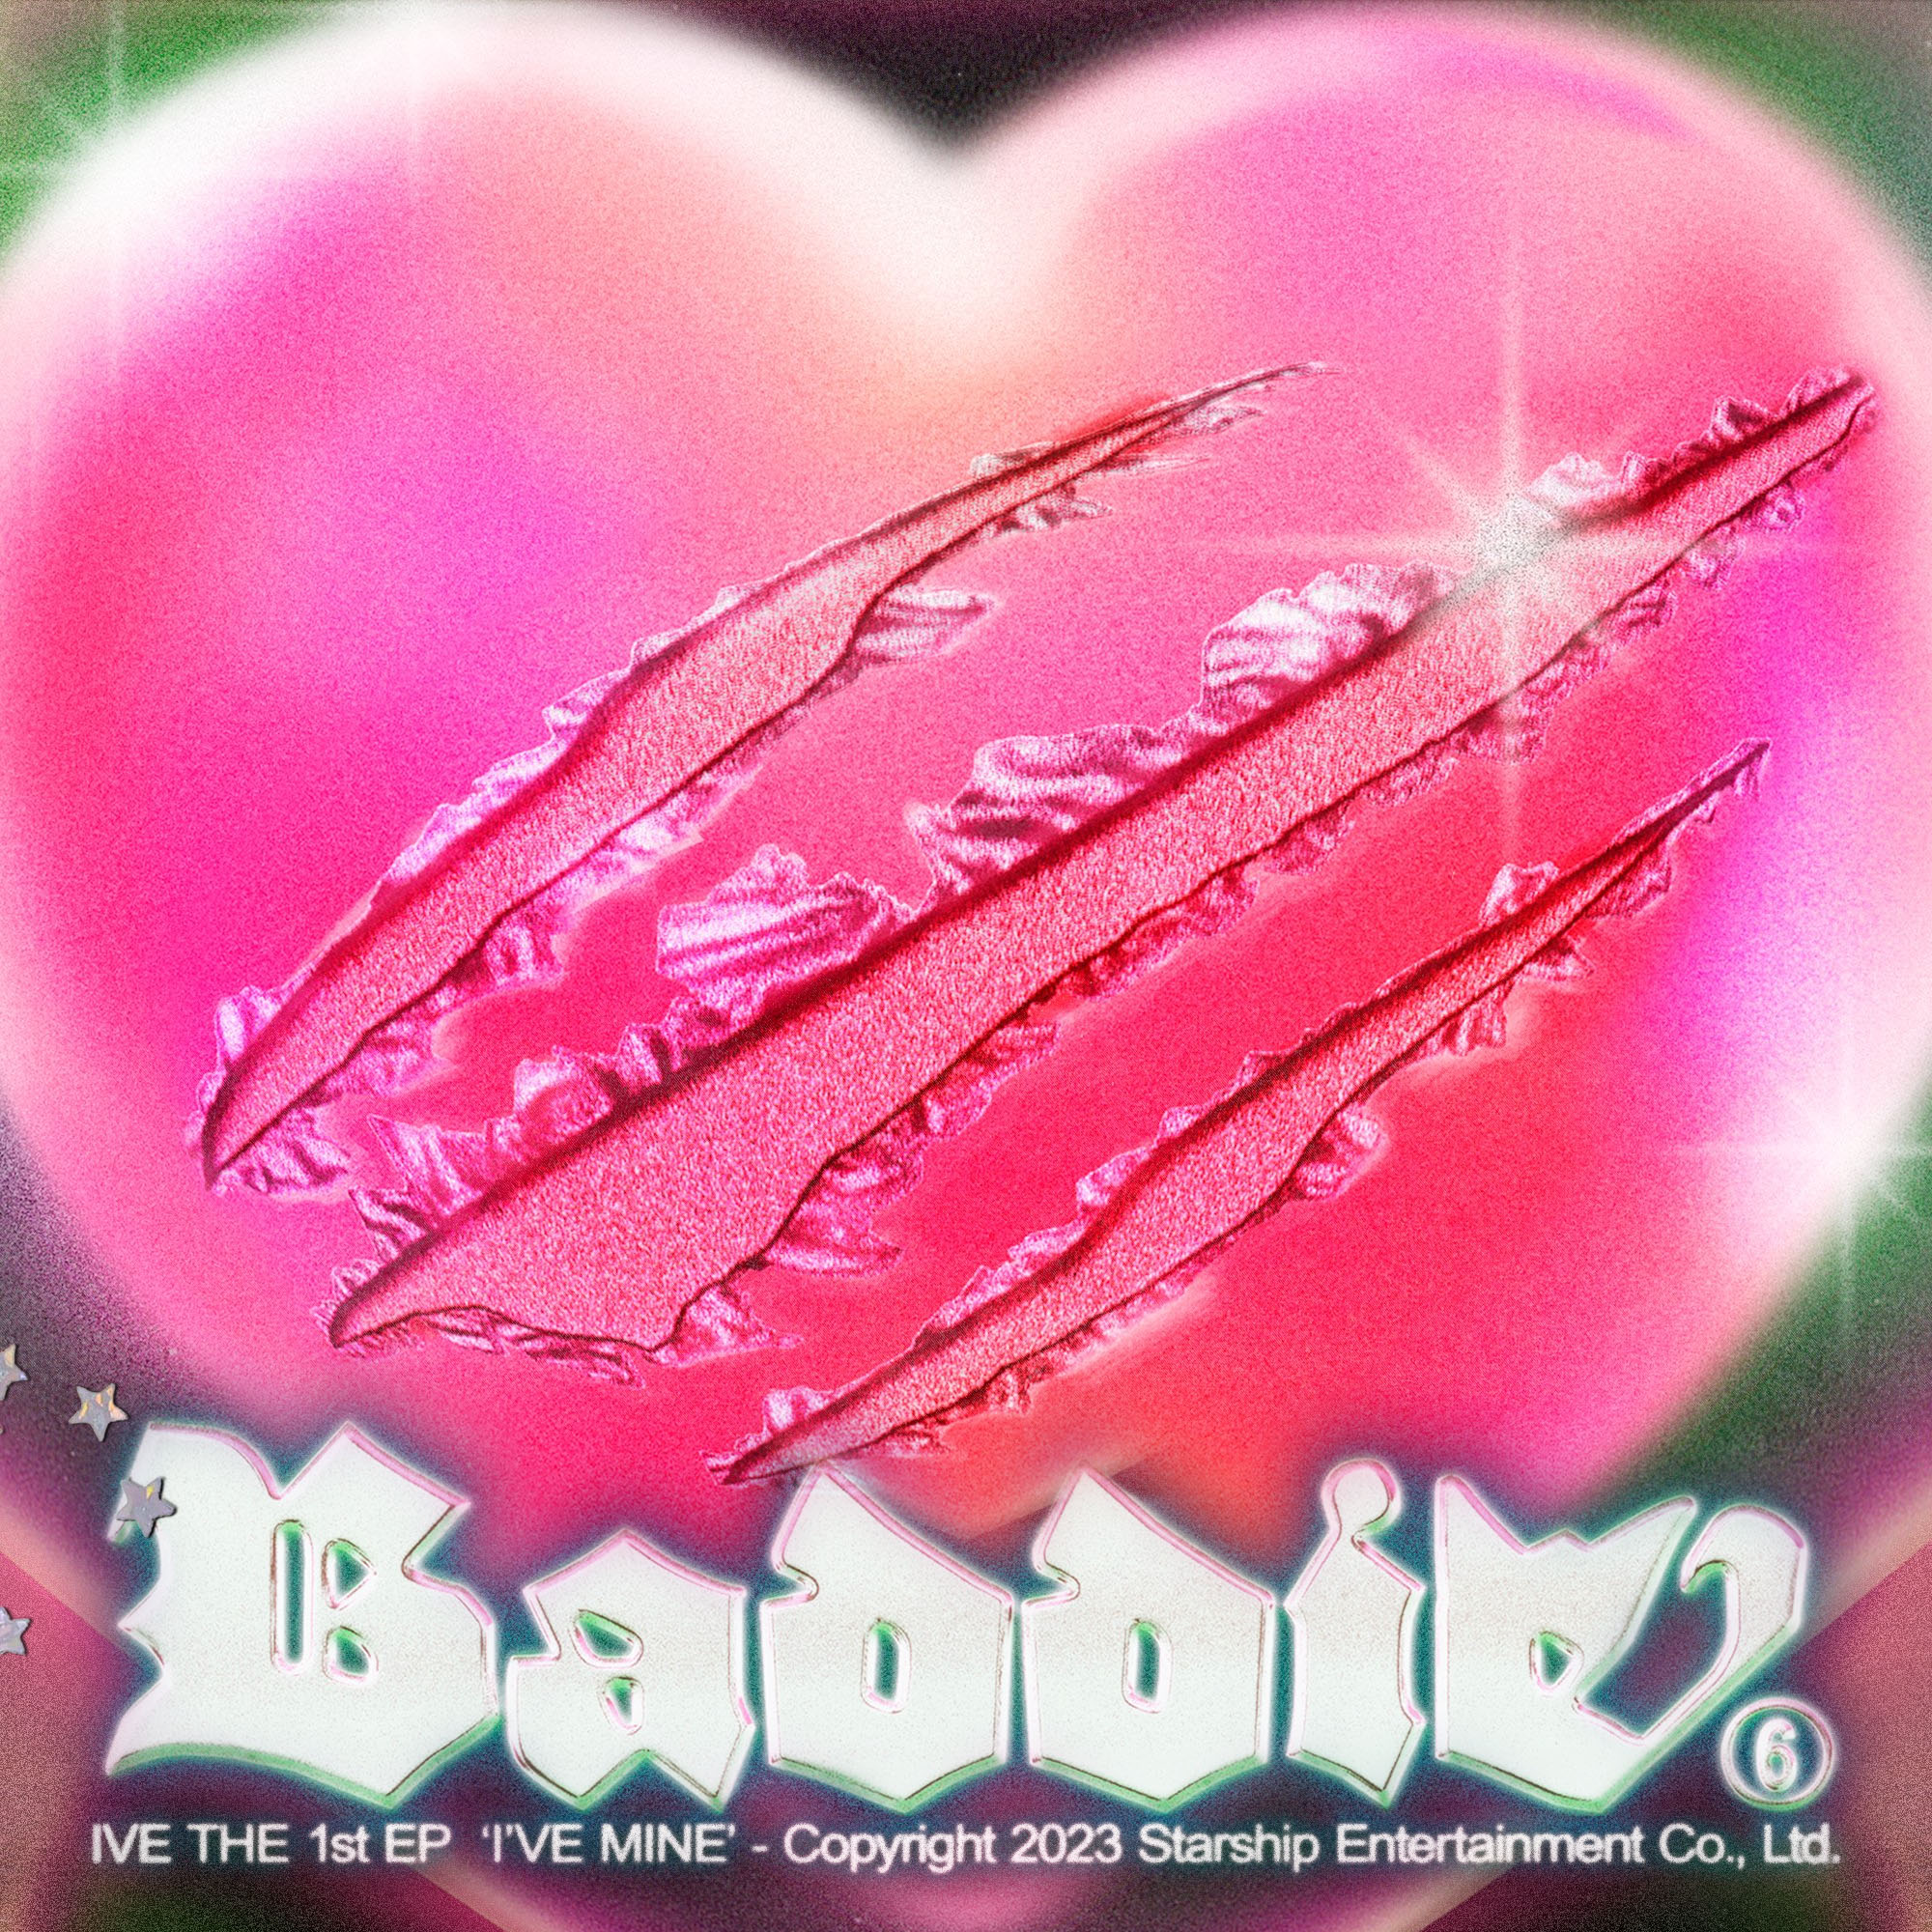 IVE - BADDIE - Reviews - Album of The Year